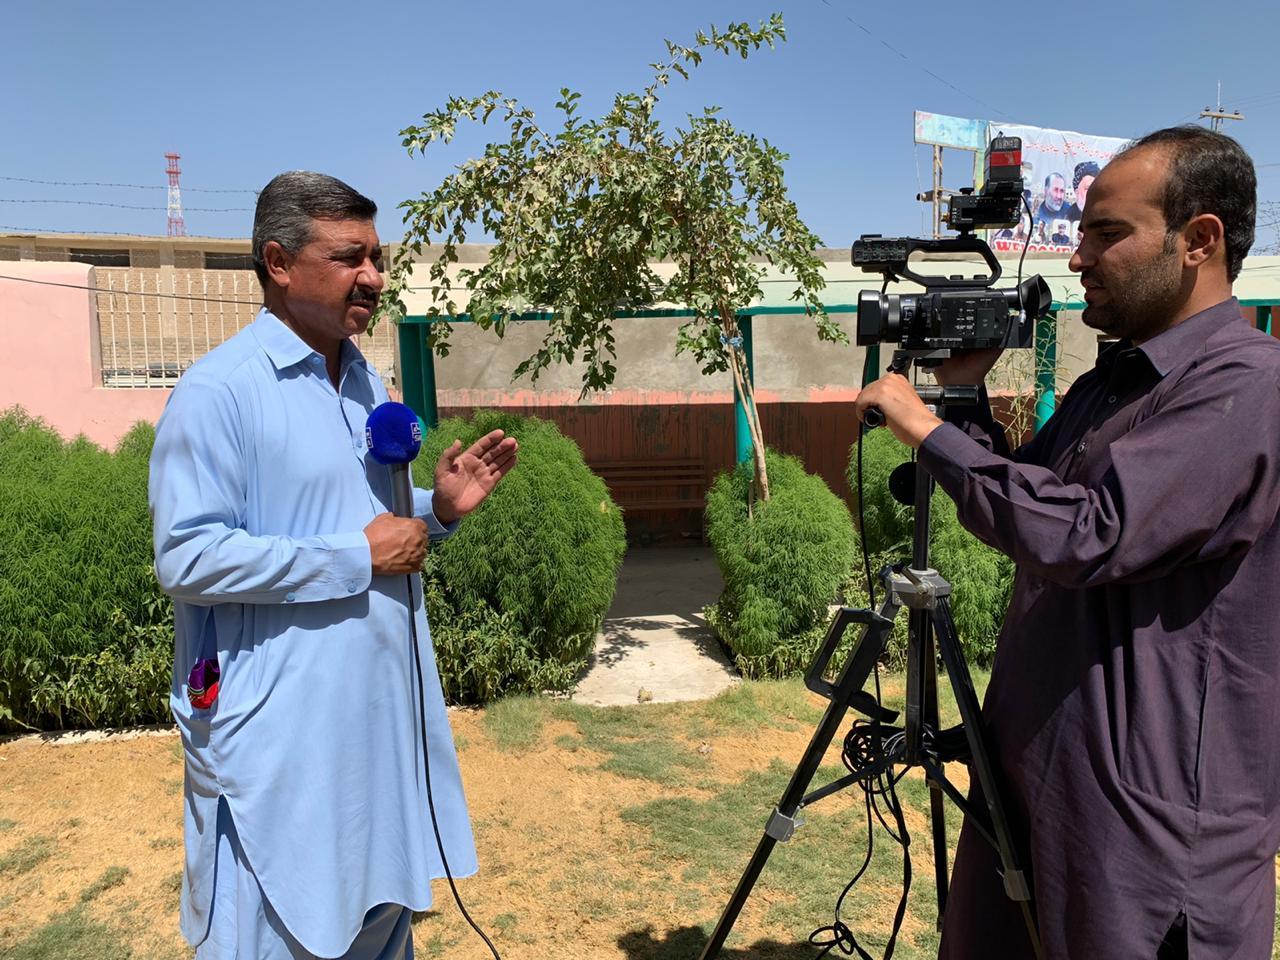 Саид Али Ачакзай, журналист канала на языке урду, Samaa News, репортаж из чамана, пакистанской провинции Белуджистан.